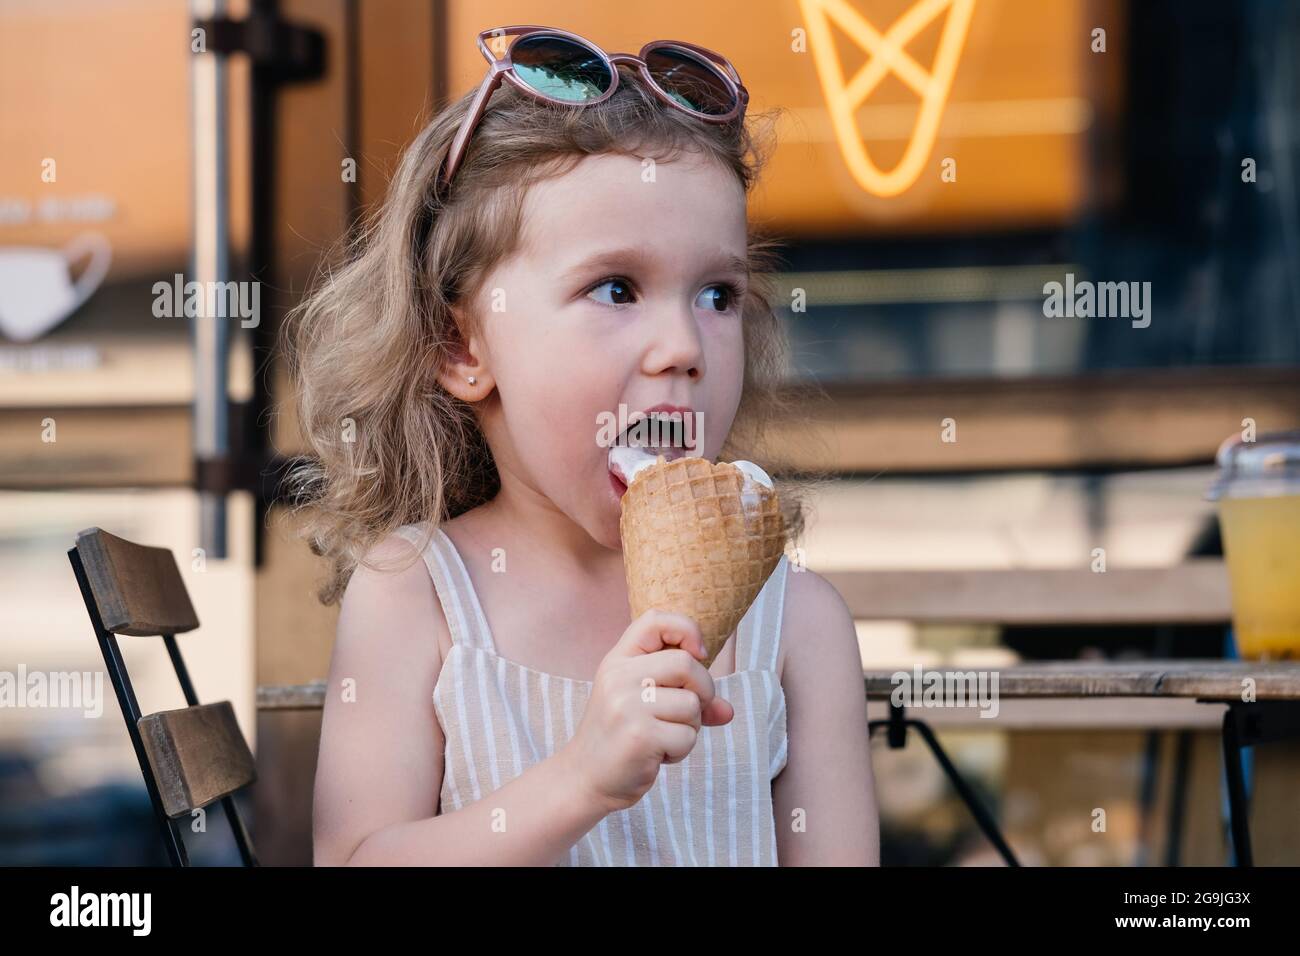 Kleinkind, das draußen in der Nähe des Cafés Kegeleis isst. Cute blonde kaukasische Mädchen lecken gefrorenen Sommer Essen auf der Straße. Schmutziger Mund, glückliches Kind. Stockfoto